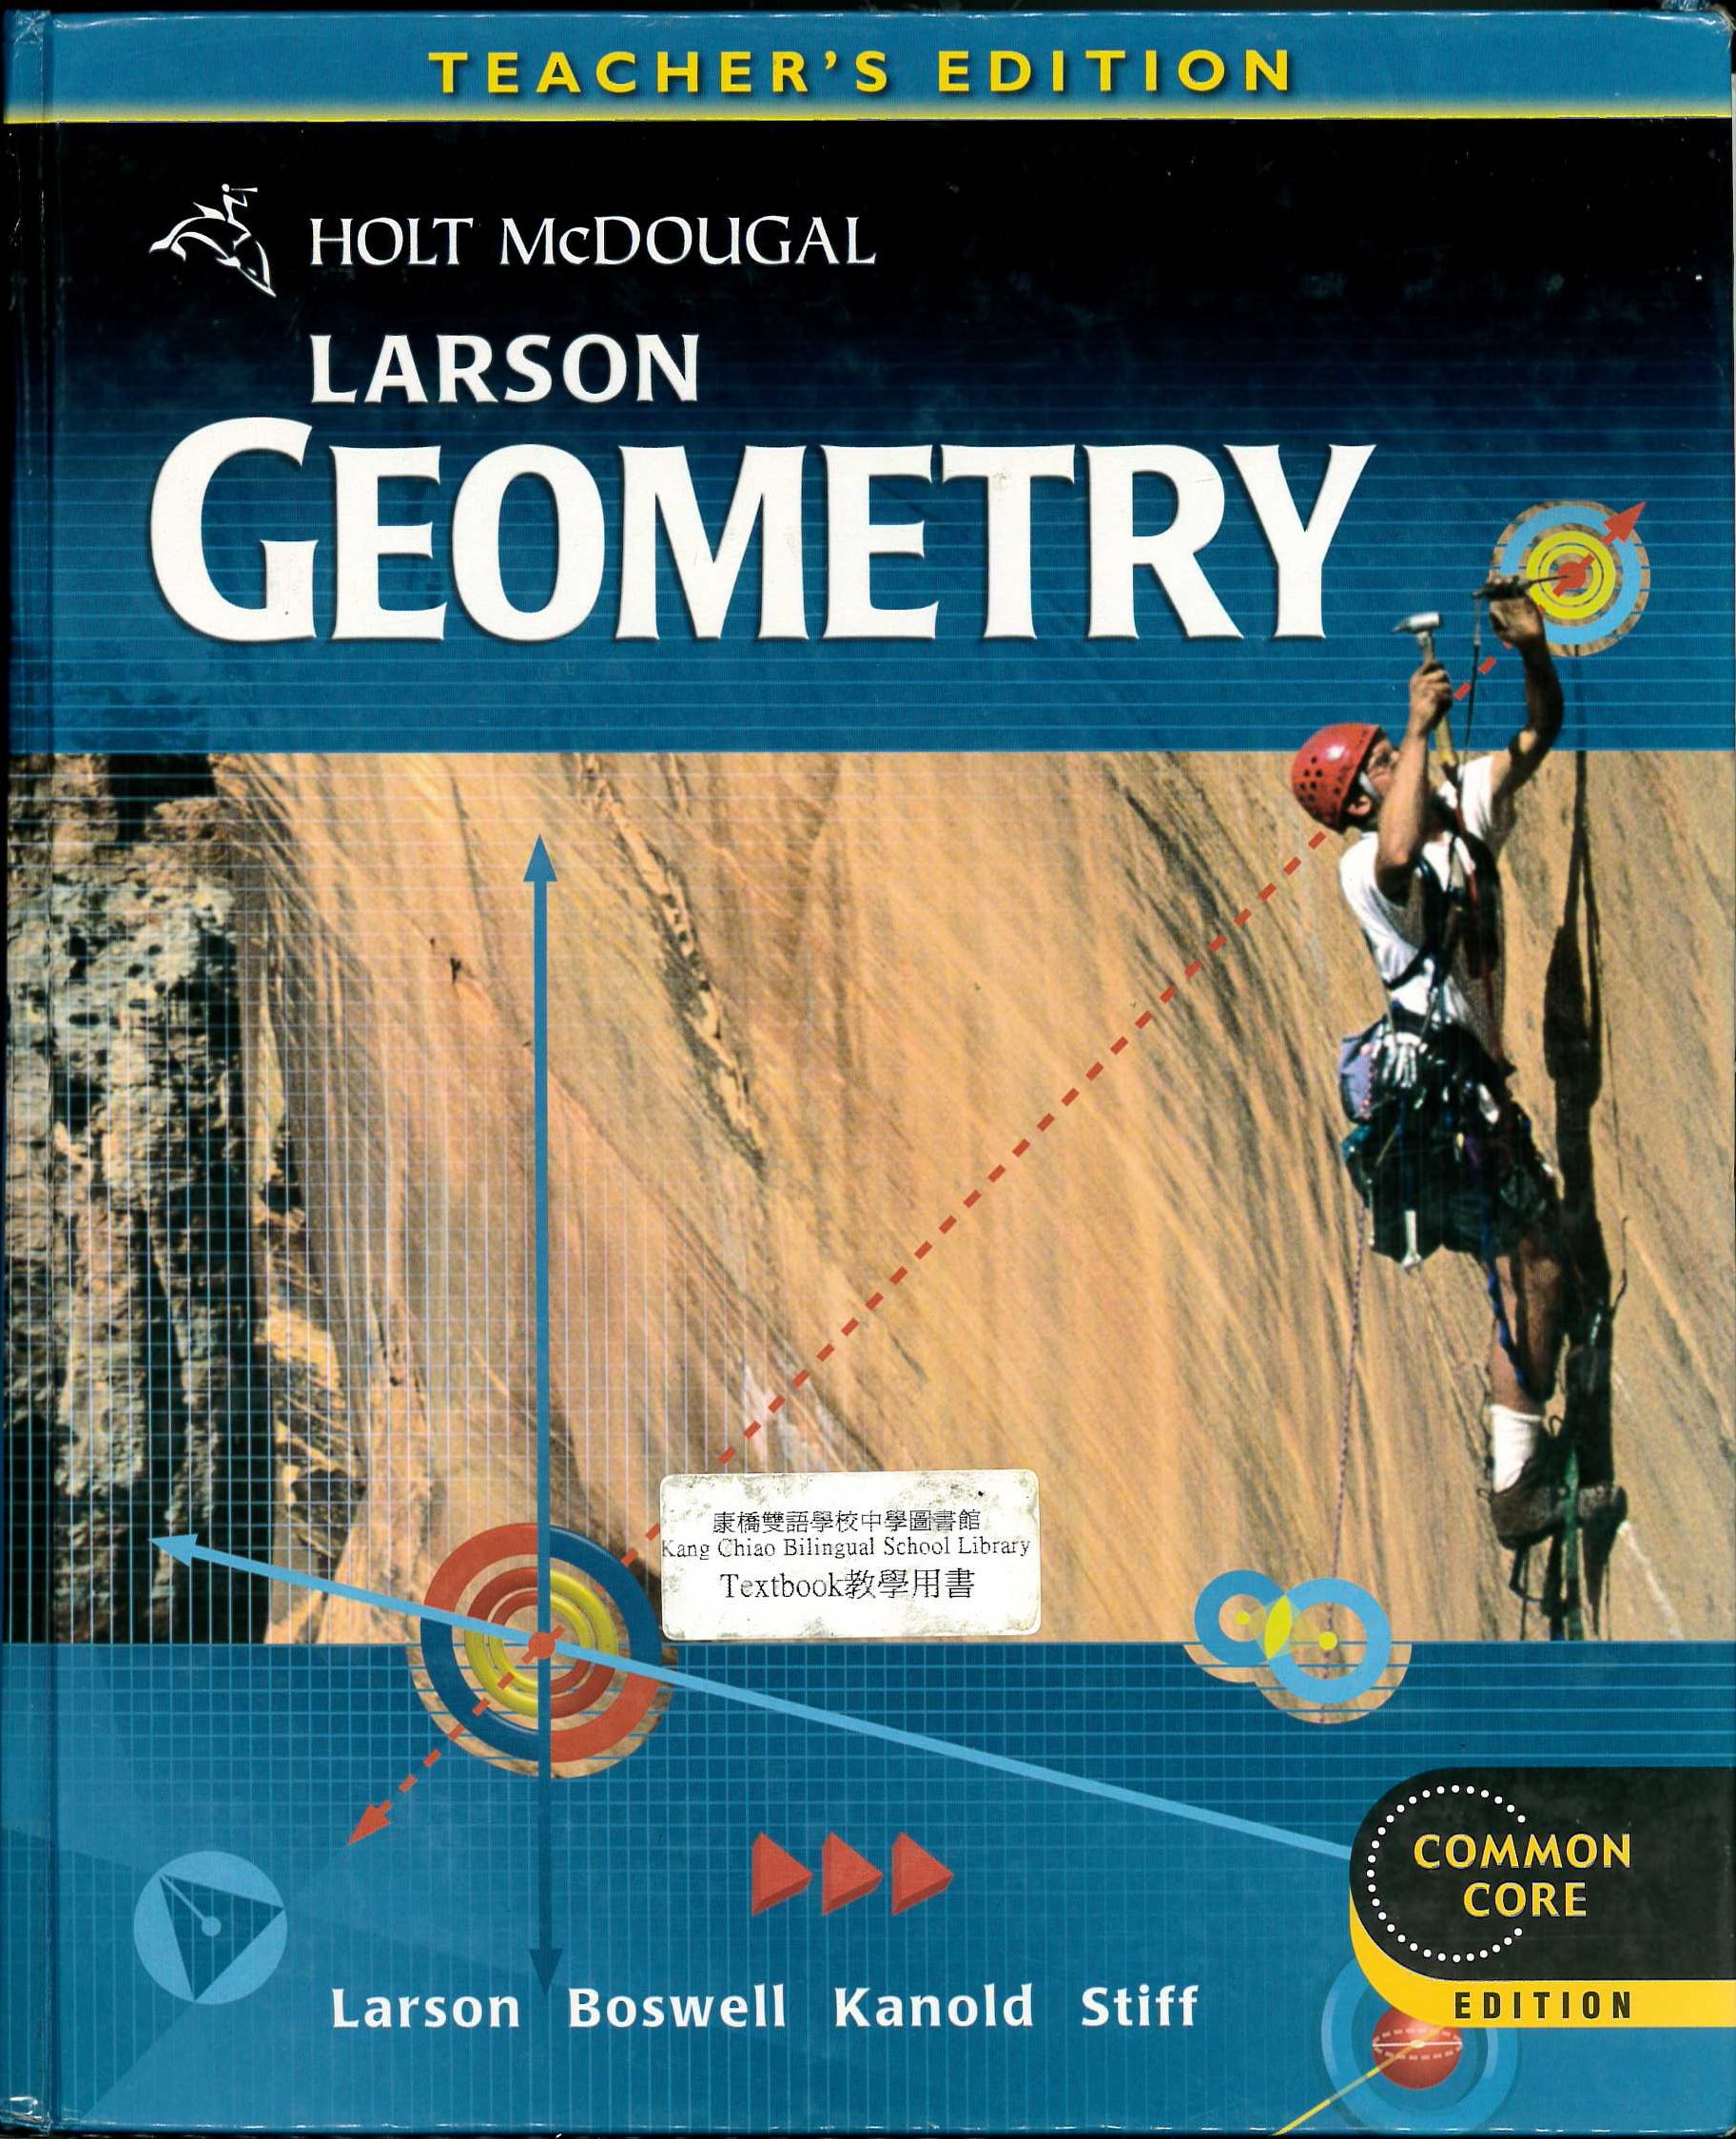 Holt McDougal geometry [Teacher